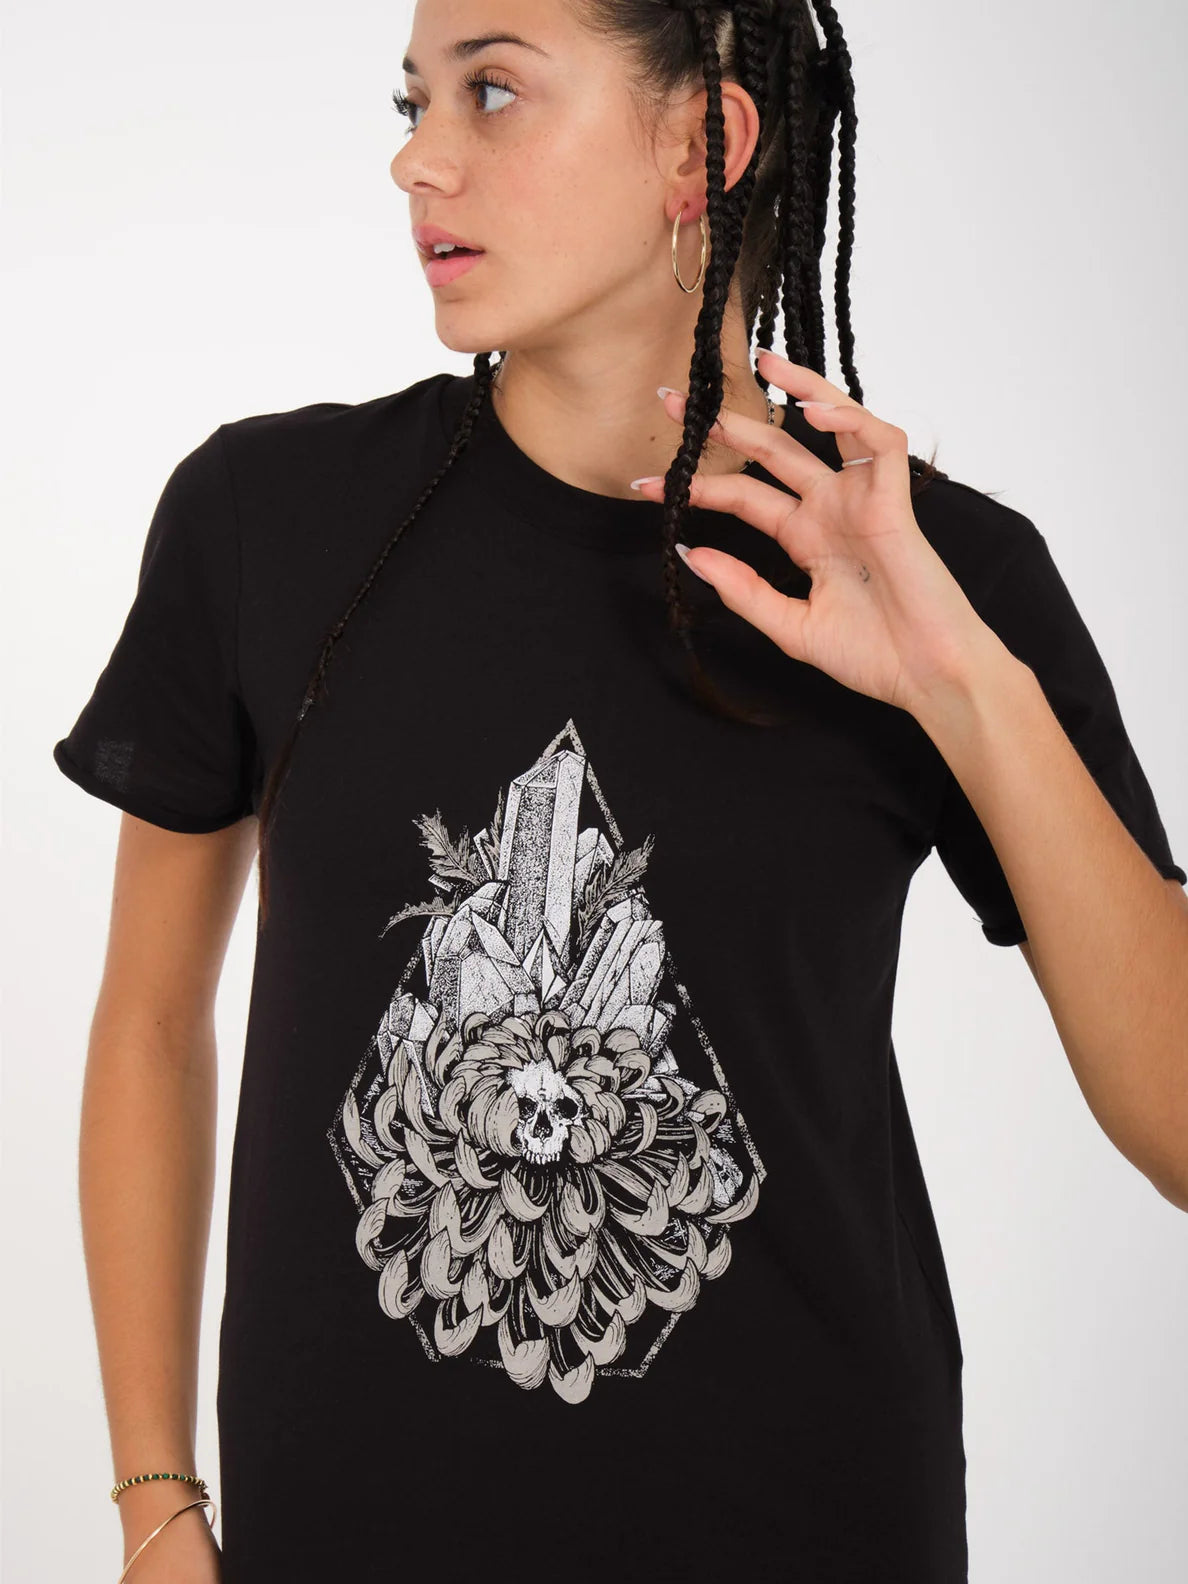 Camiseta Chica Volcom Radical Daze - Black | surfdevils.com